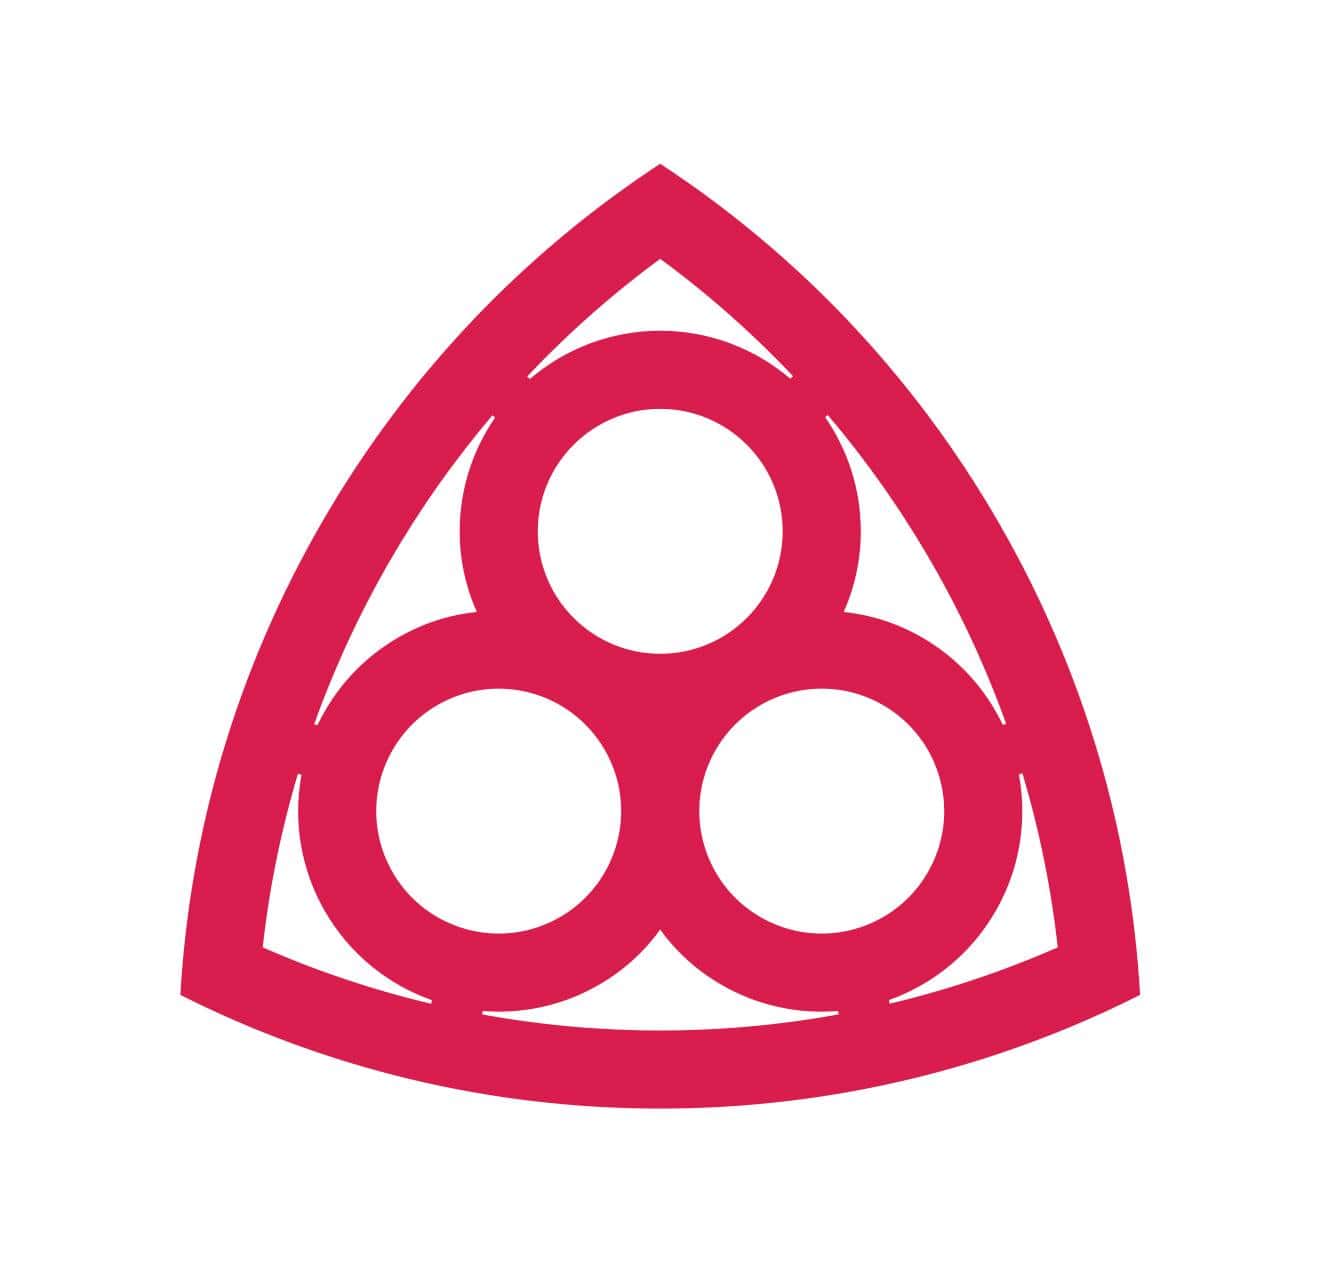 Logo zawierające 3 czerwone koła w czerwonym trójkącie